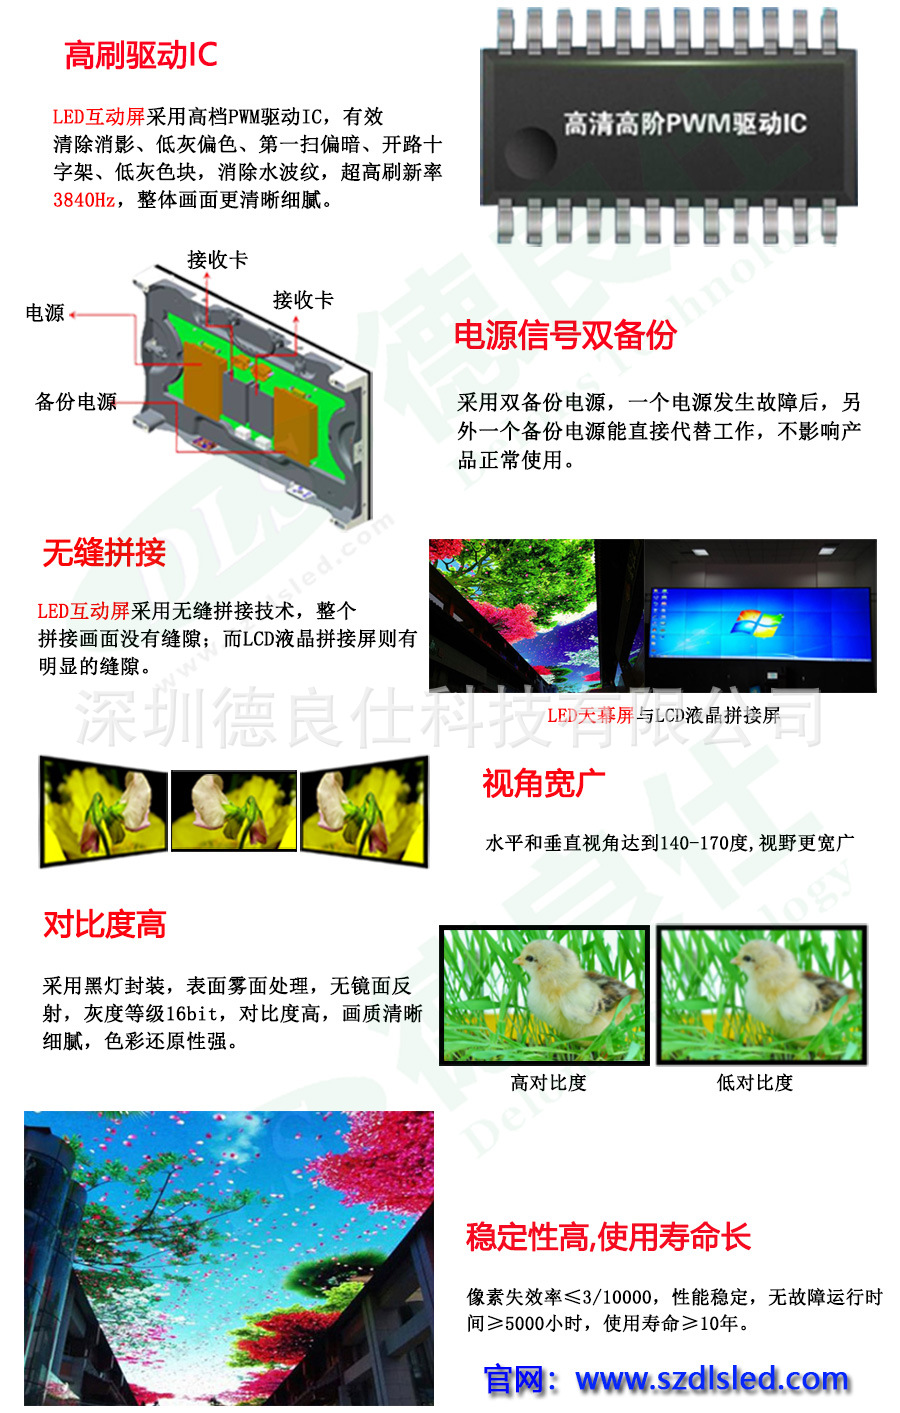 景区旅游胜地豪华网红LED天幕显示屏(图3)